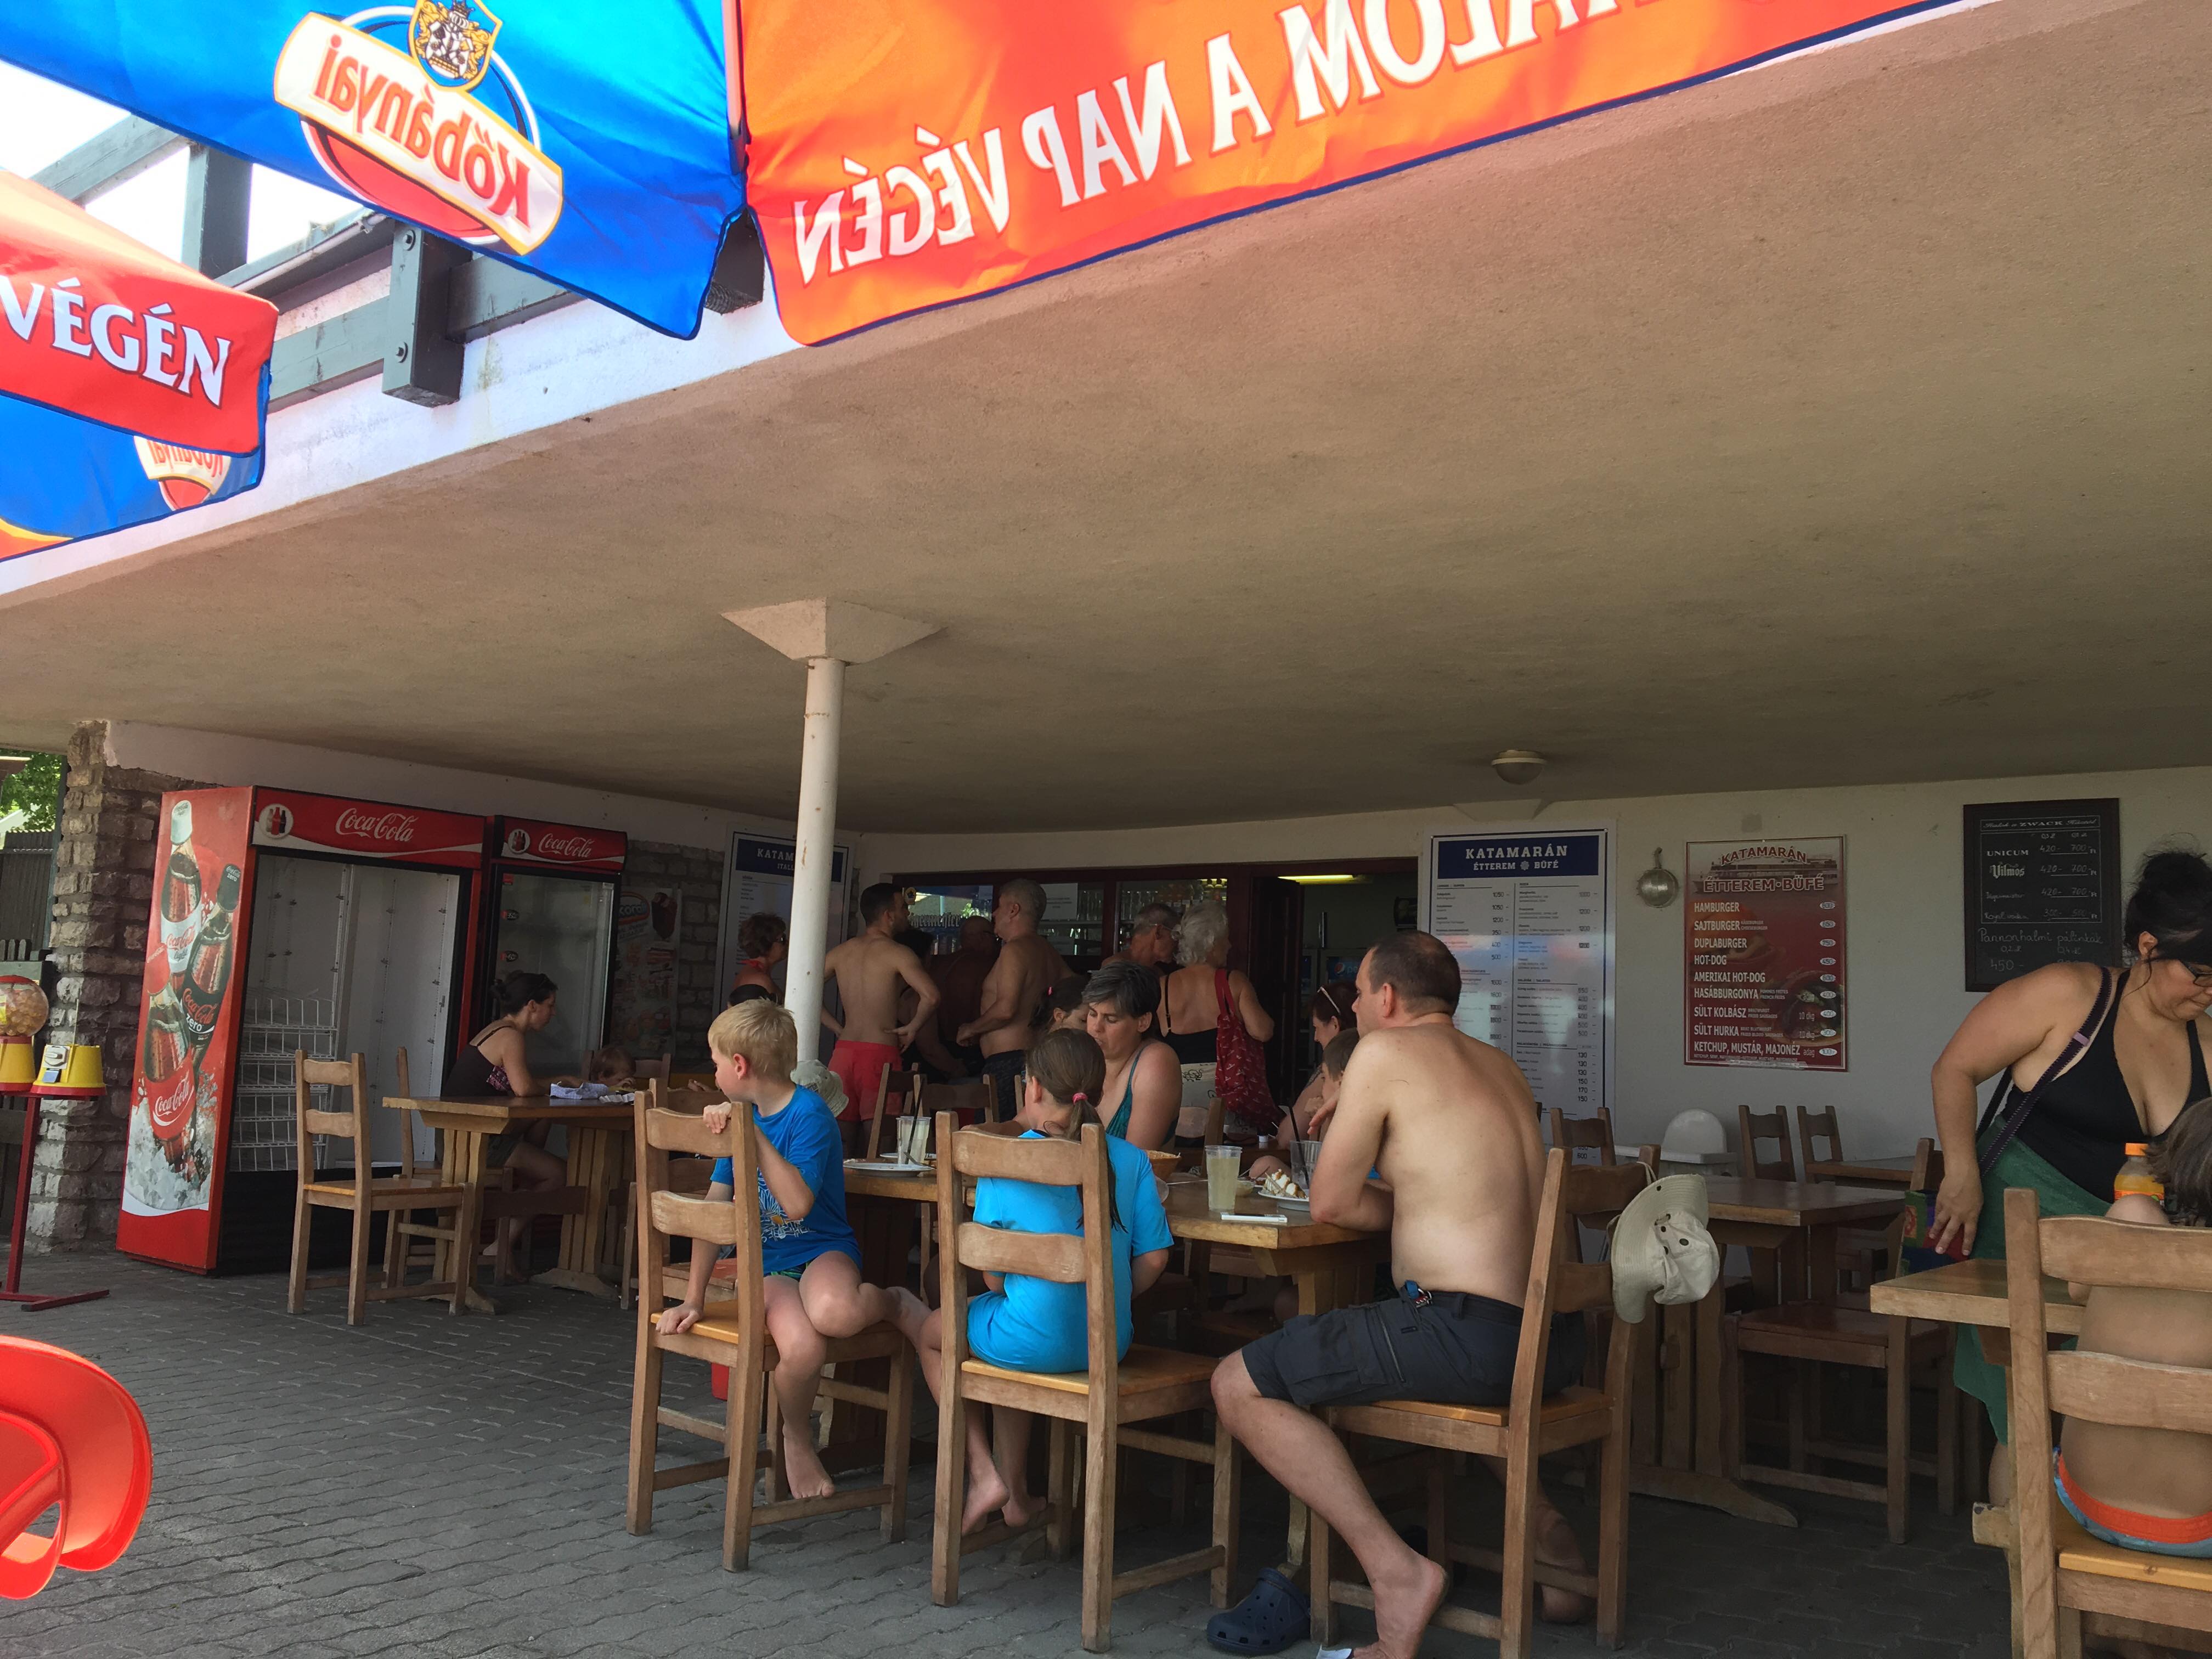 A tihanyi Katamarán Étterem igazi büfé hangulatot hoz el nekünk a Balaton partra. Kapható itt sok finomság például hekk, lángos, pizza, hamburger, de napi menü is. 